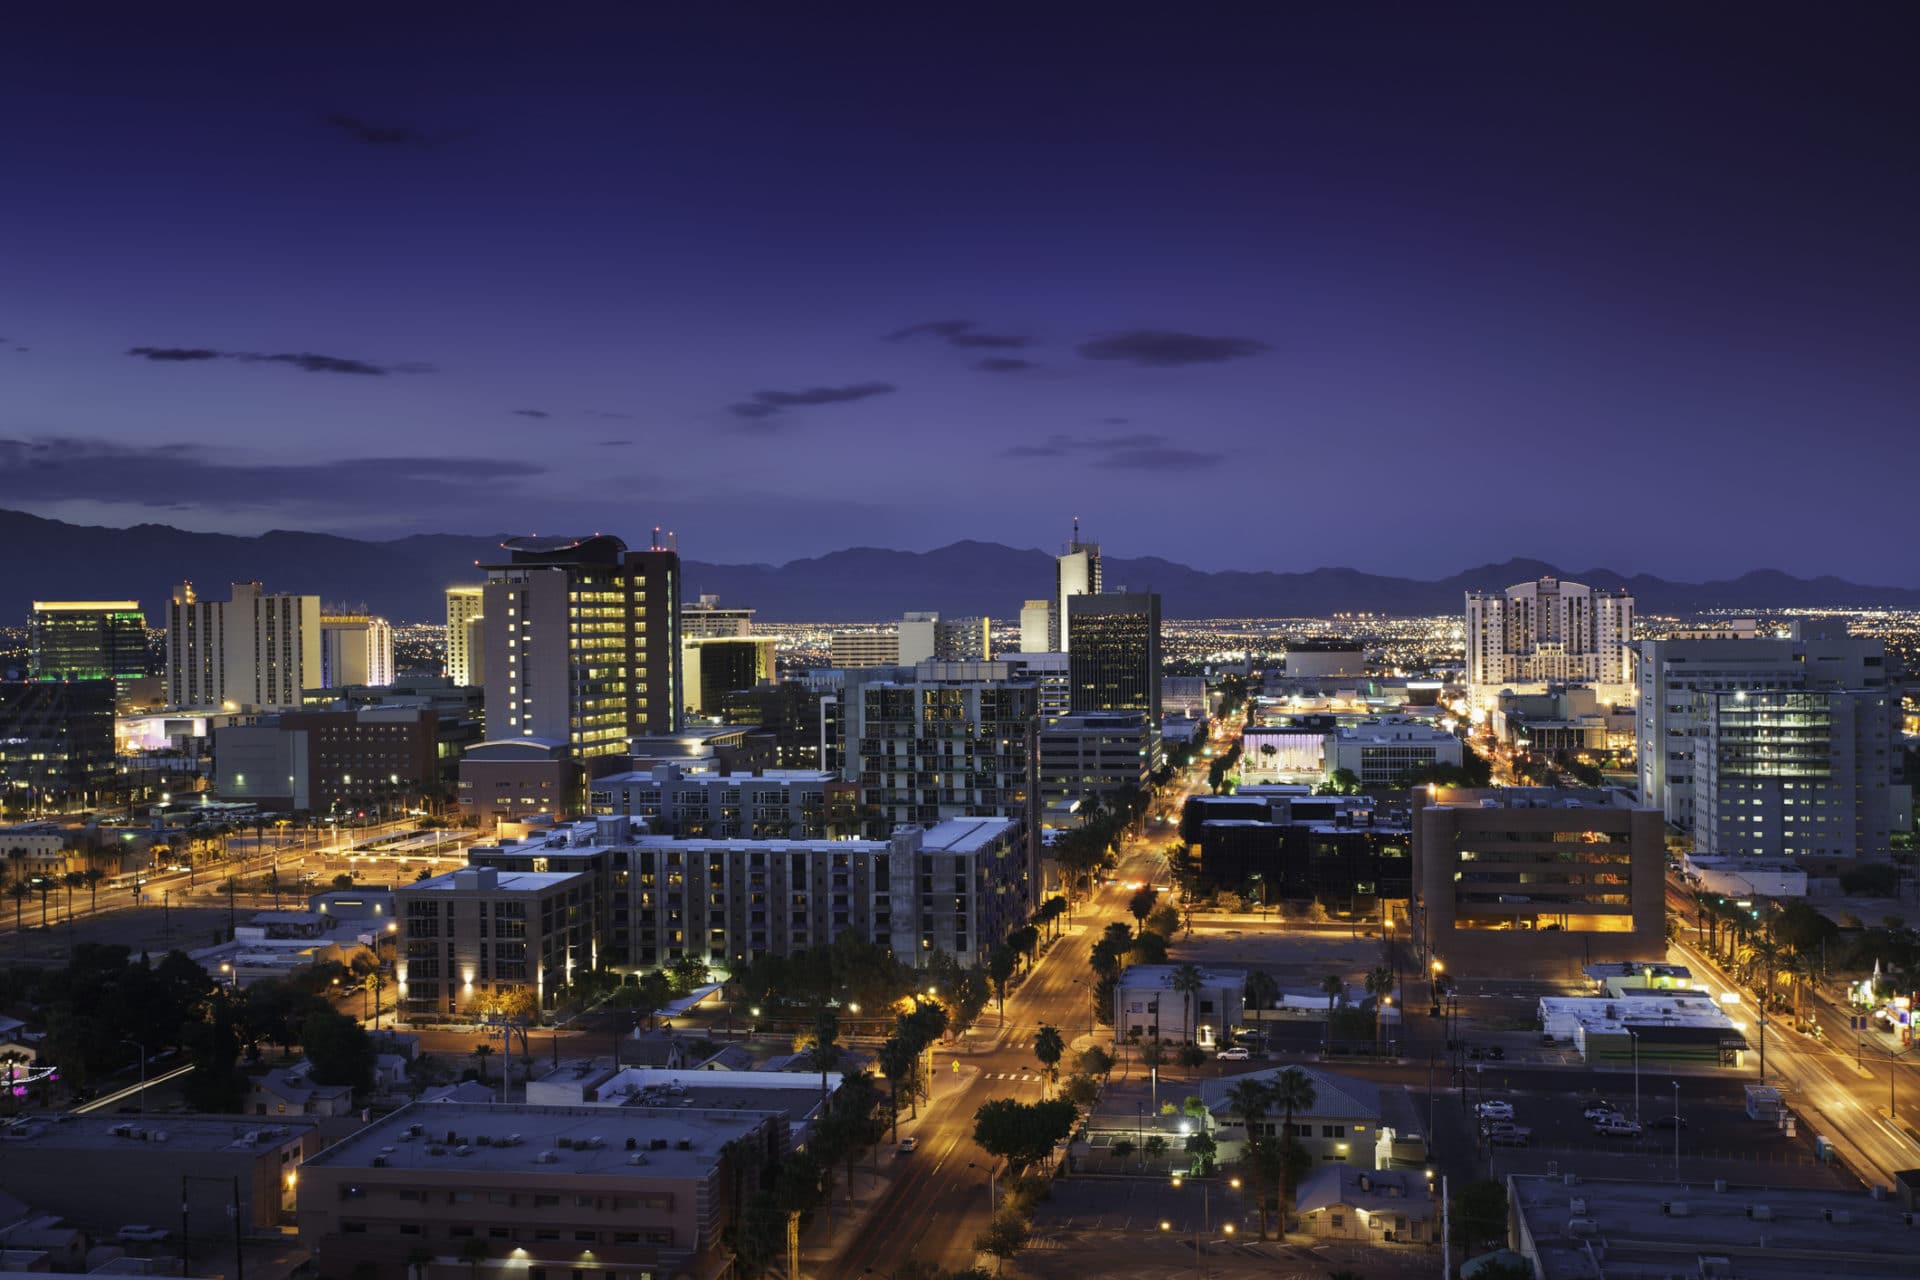 Downtown Las Vegas 2020